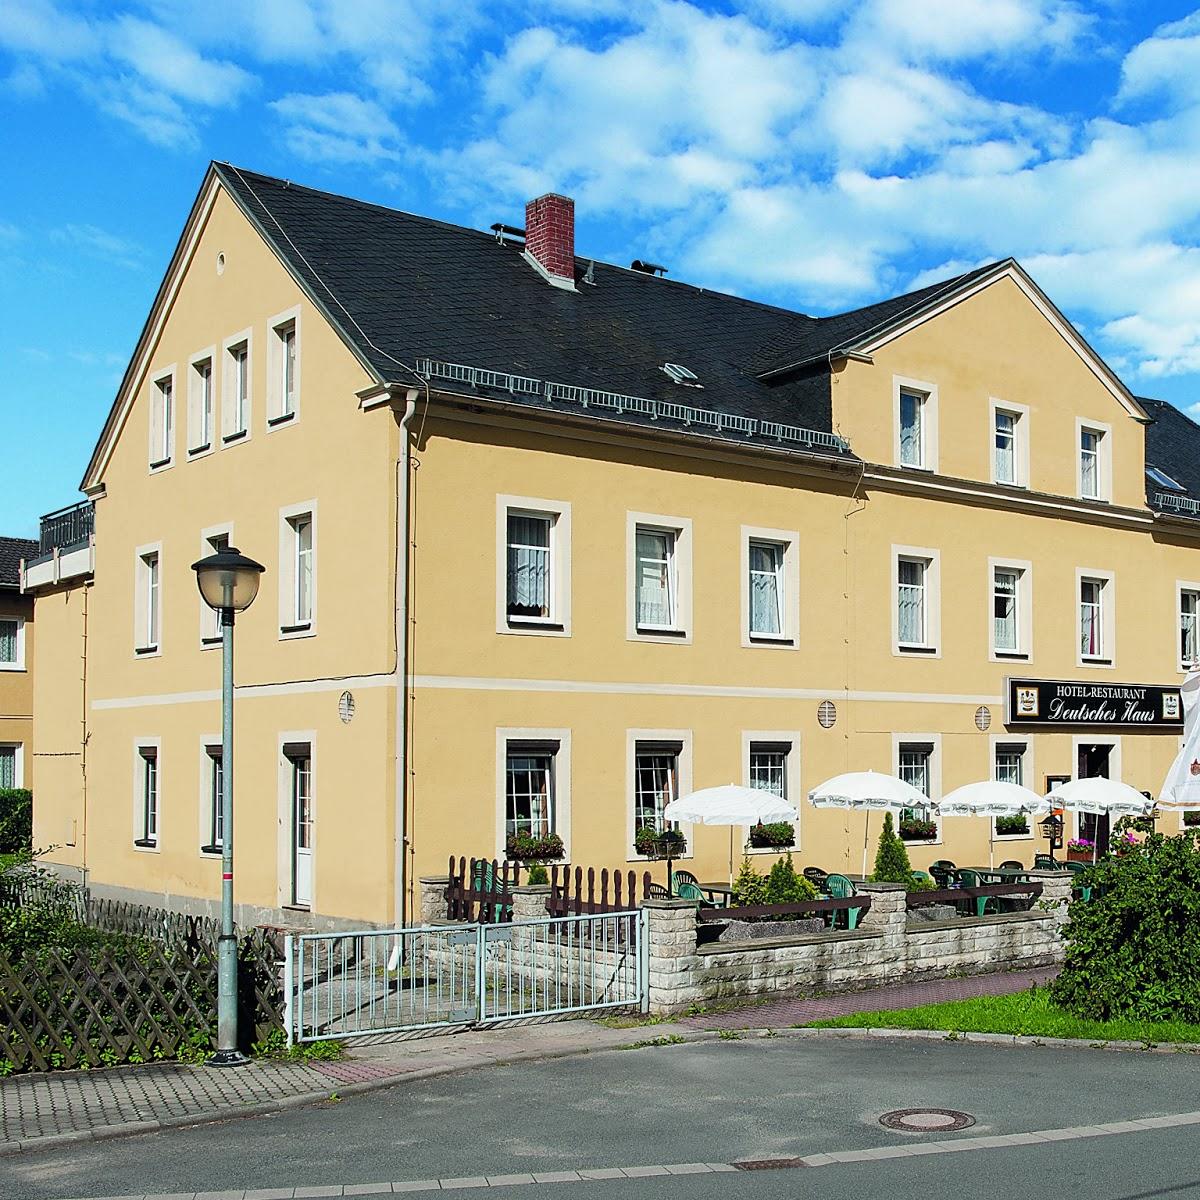 Restaurant "Hotel Deutsches Haus" in Gohrisch